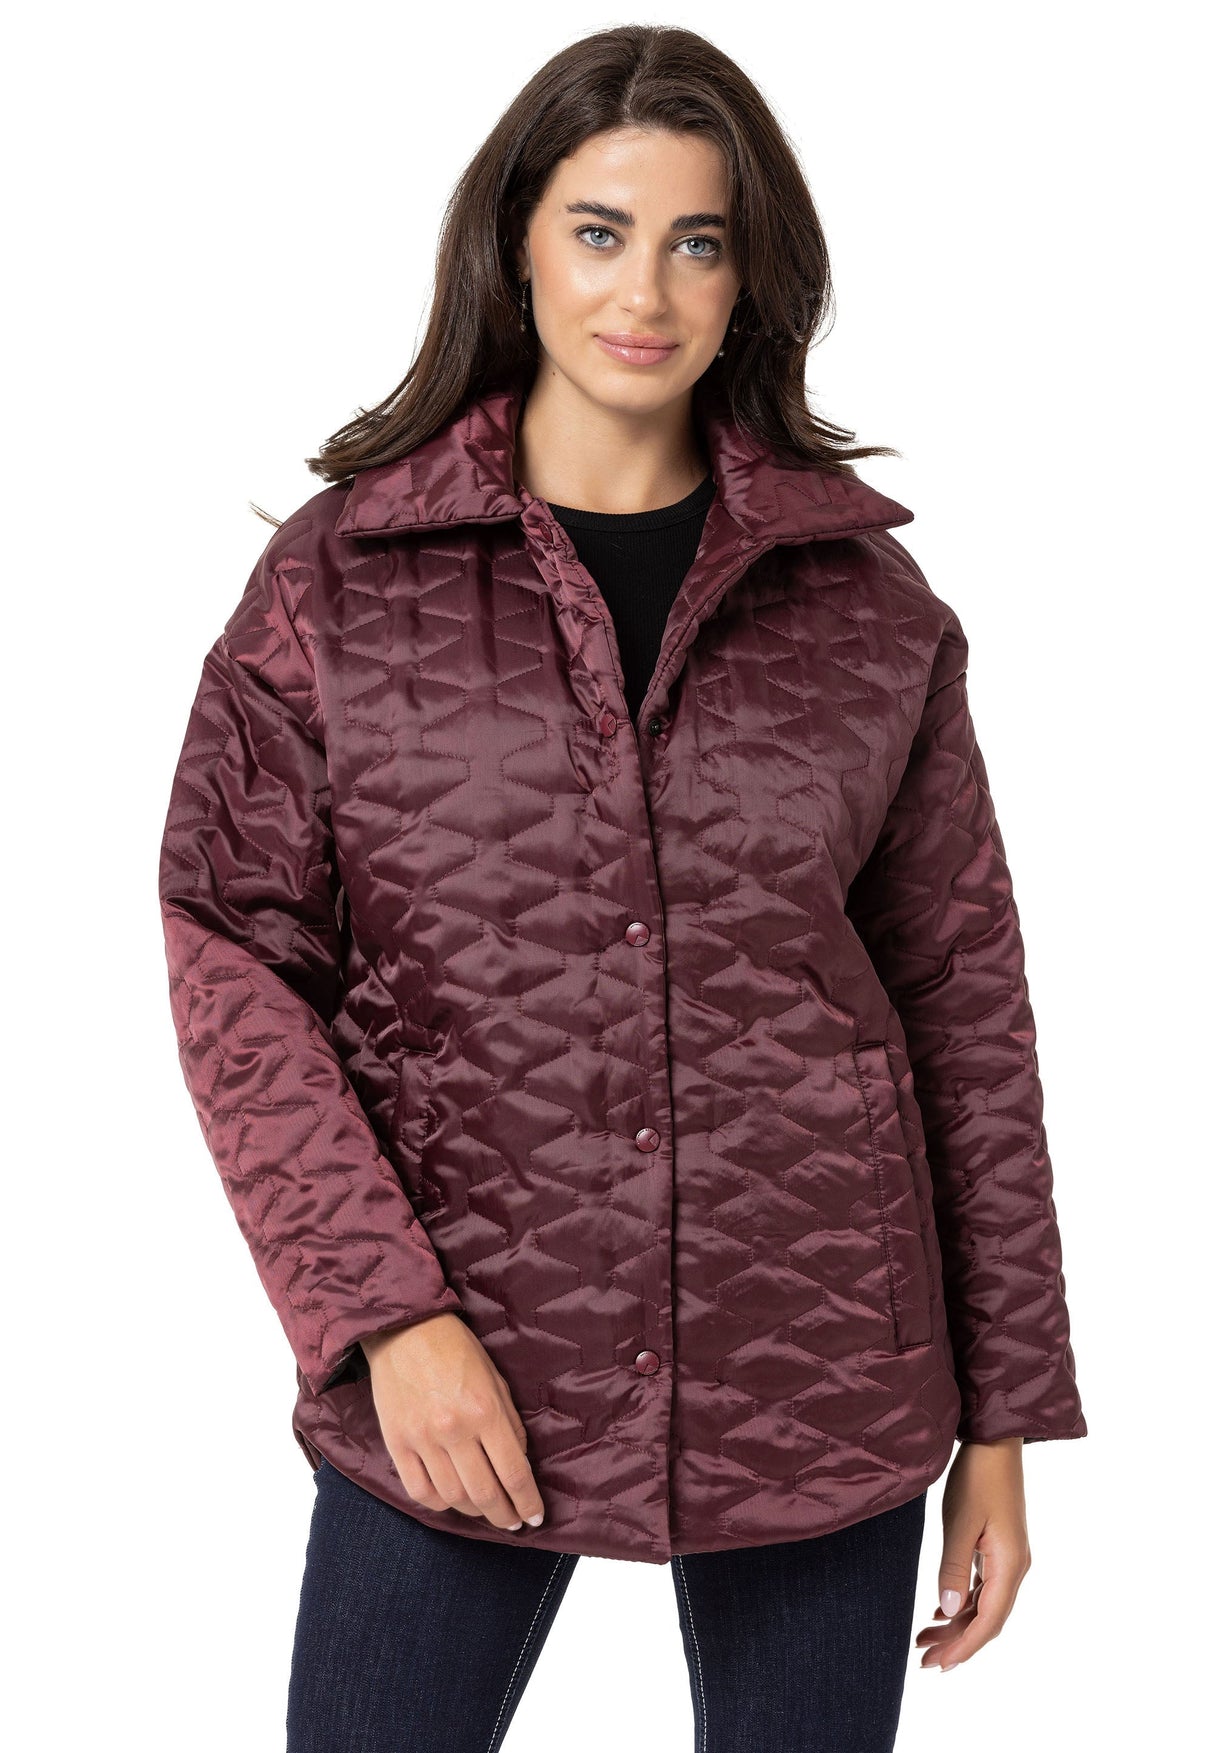 WJ221 women's jacket in step-look